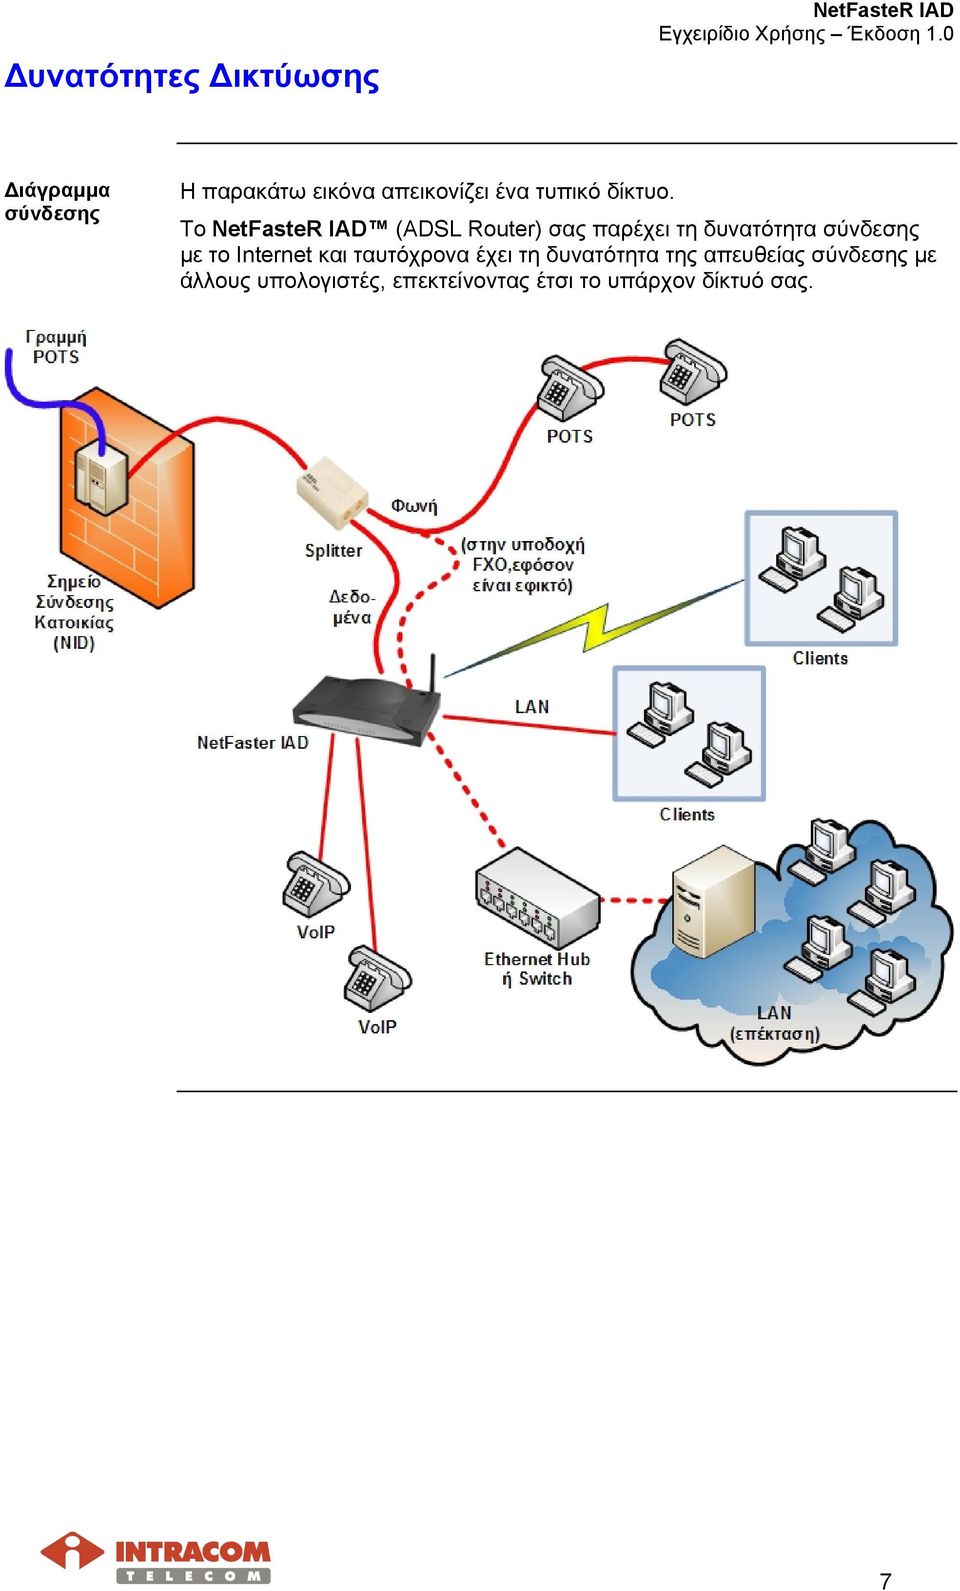 Το NetFasteR IAD (ADSL Router) σας παρέχει τη δυνατότητα σύνδεσης µε το